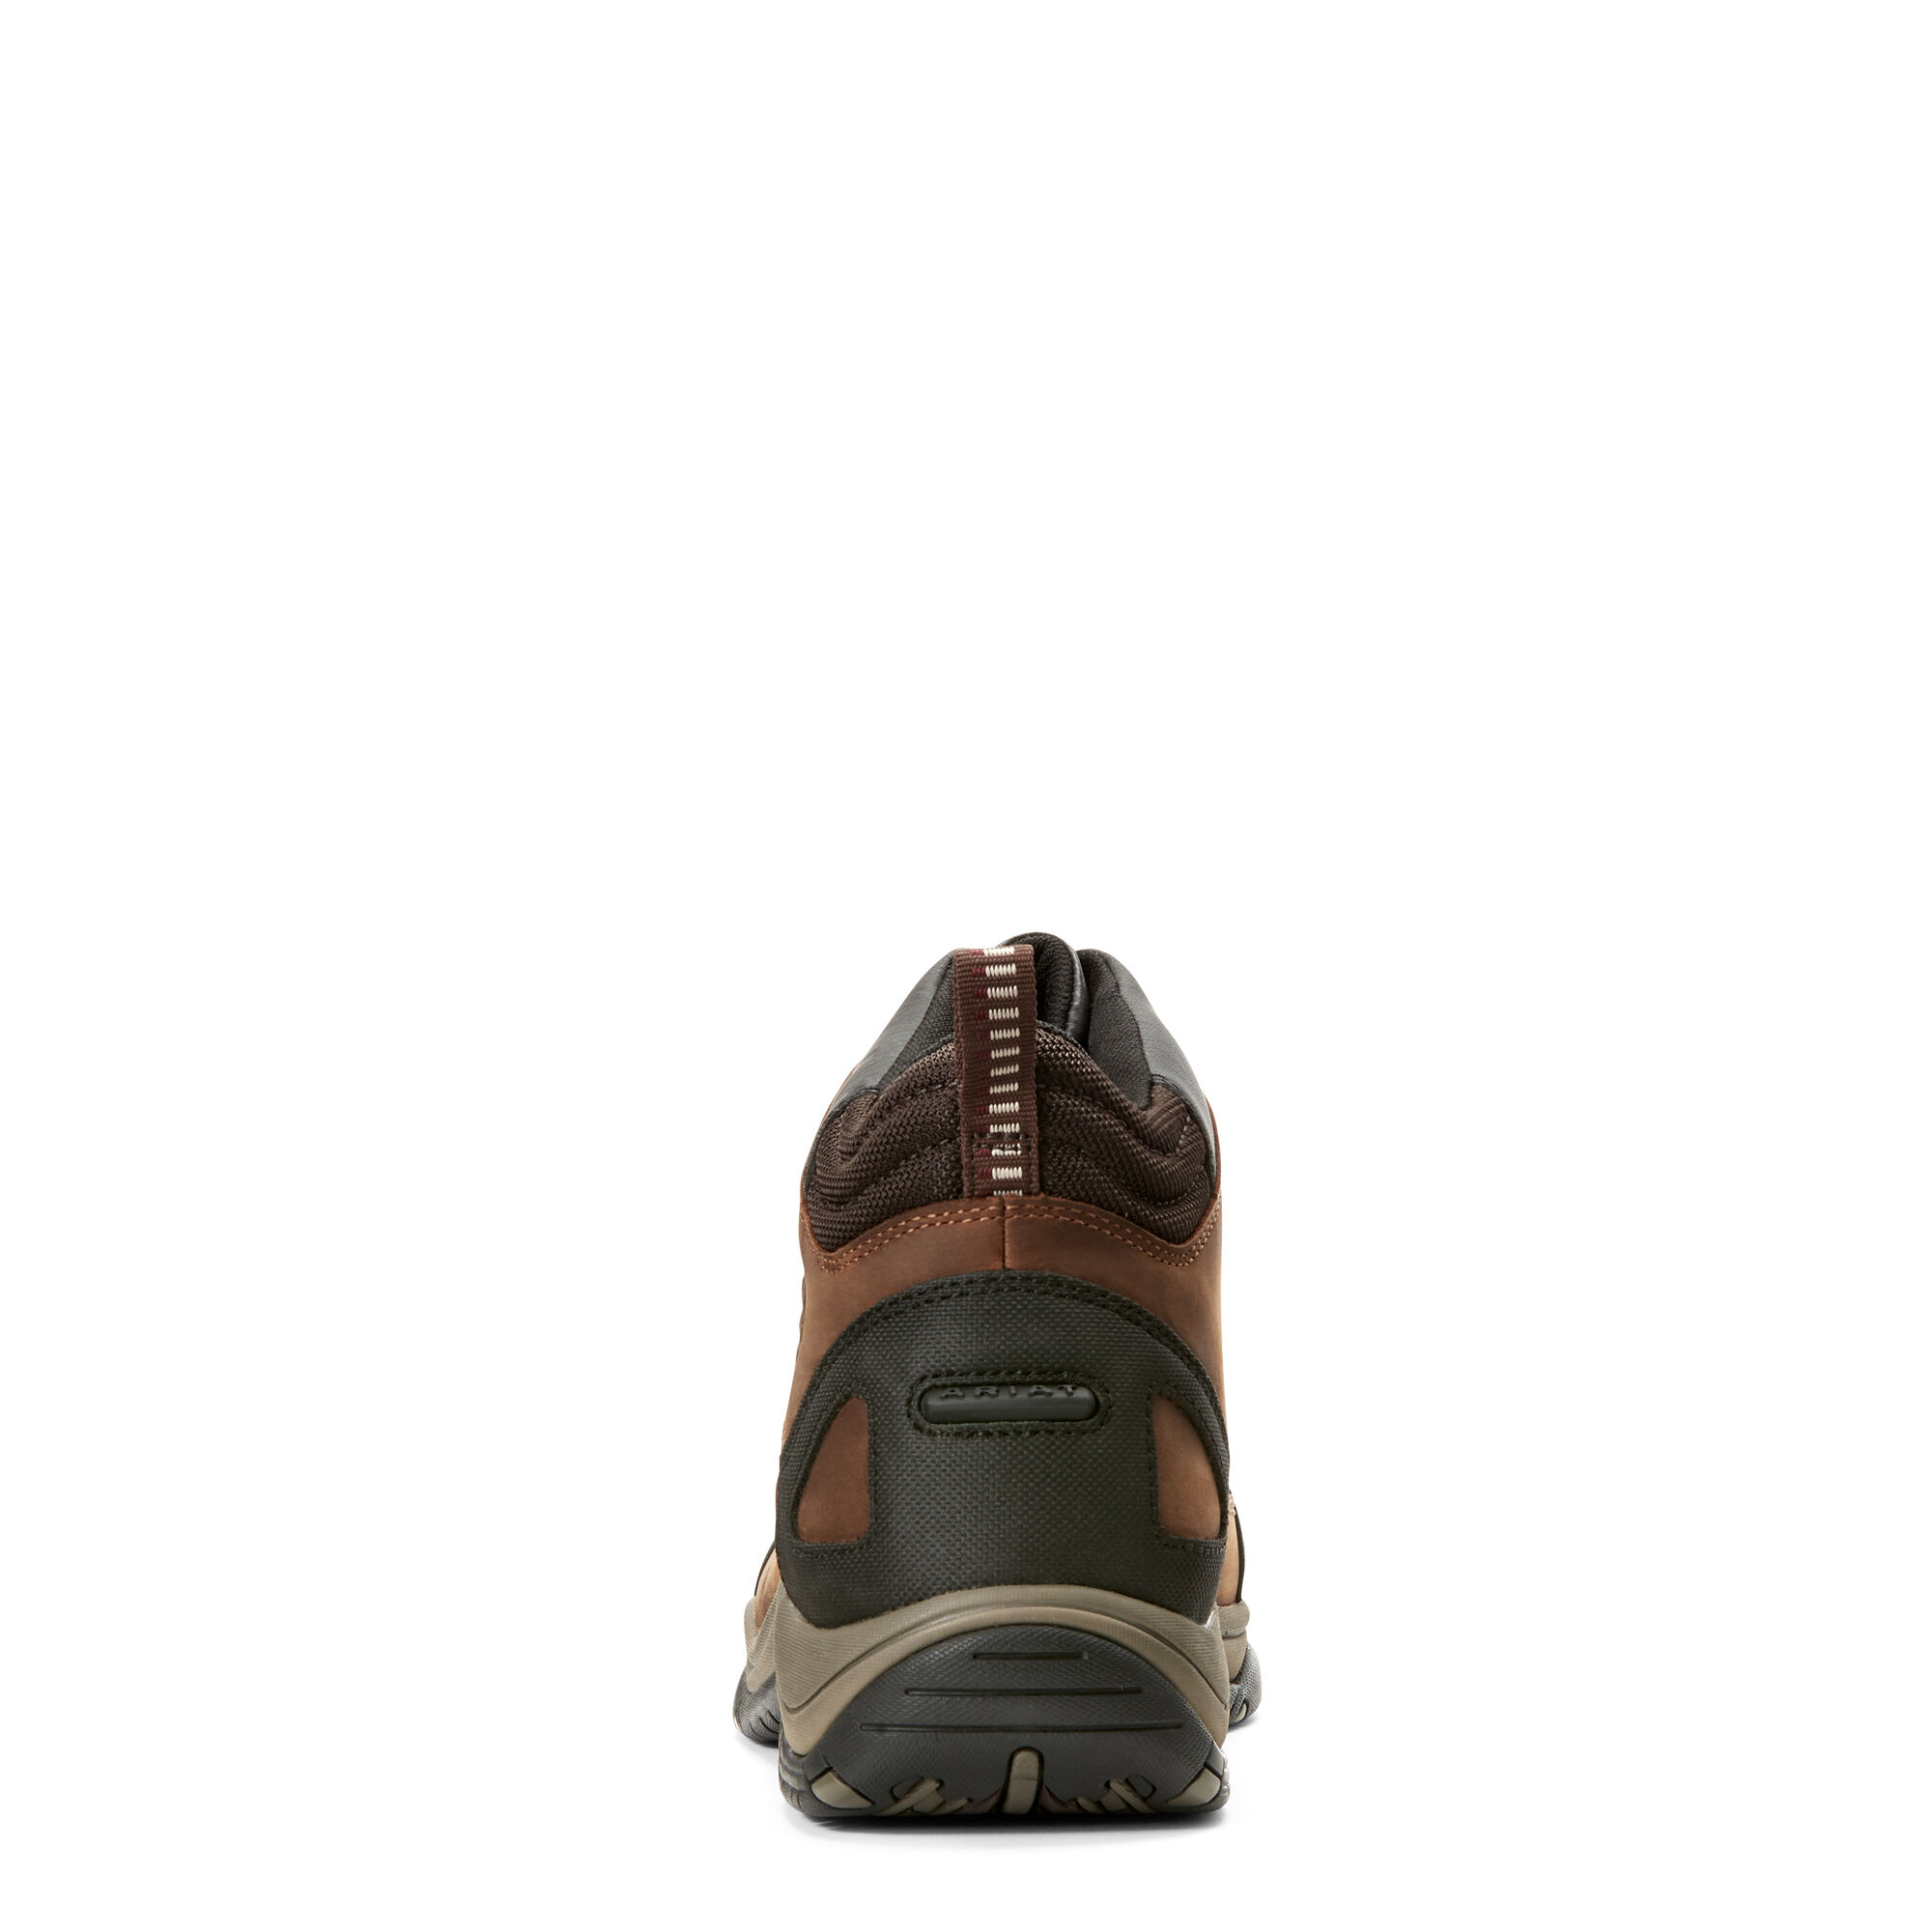 Ariat Telluride Mens Zip H20 Waterproof Boots Copper 